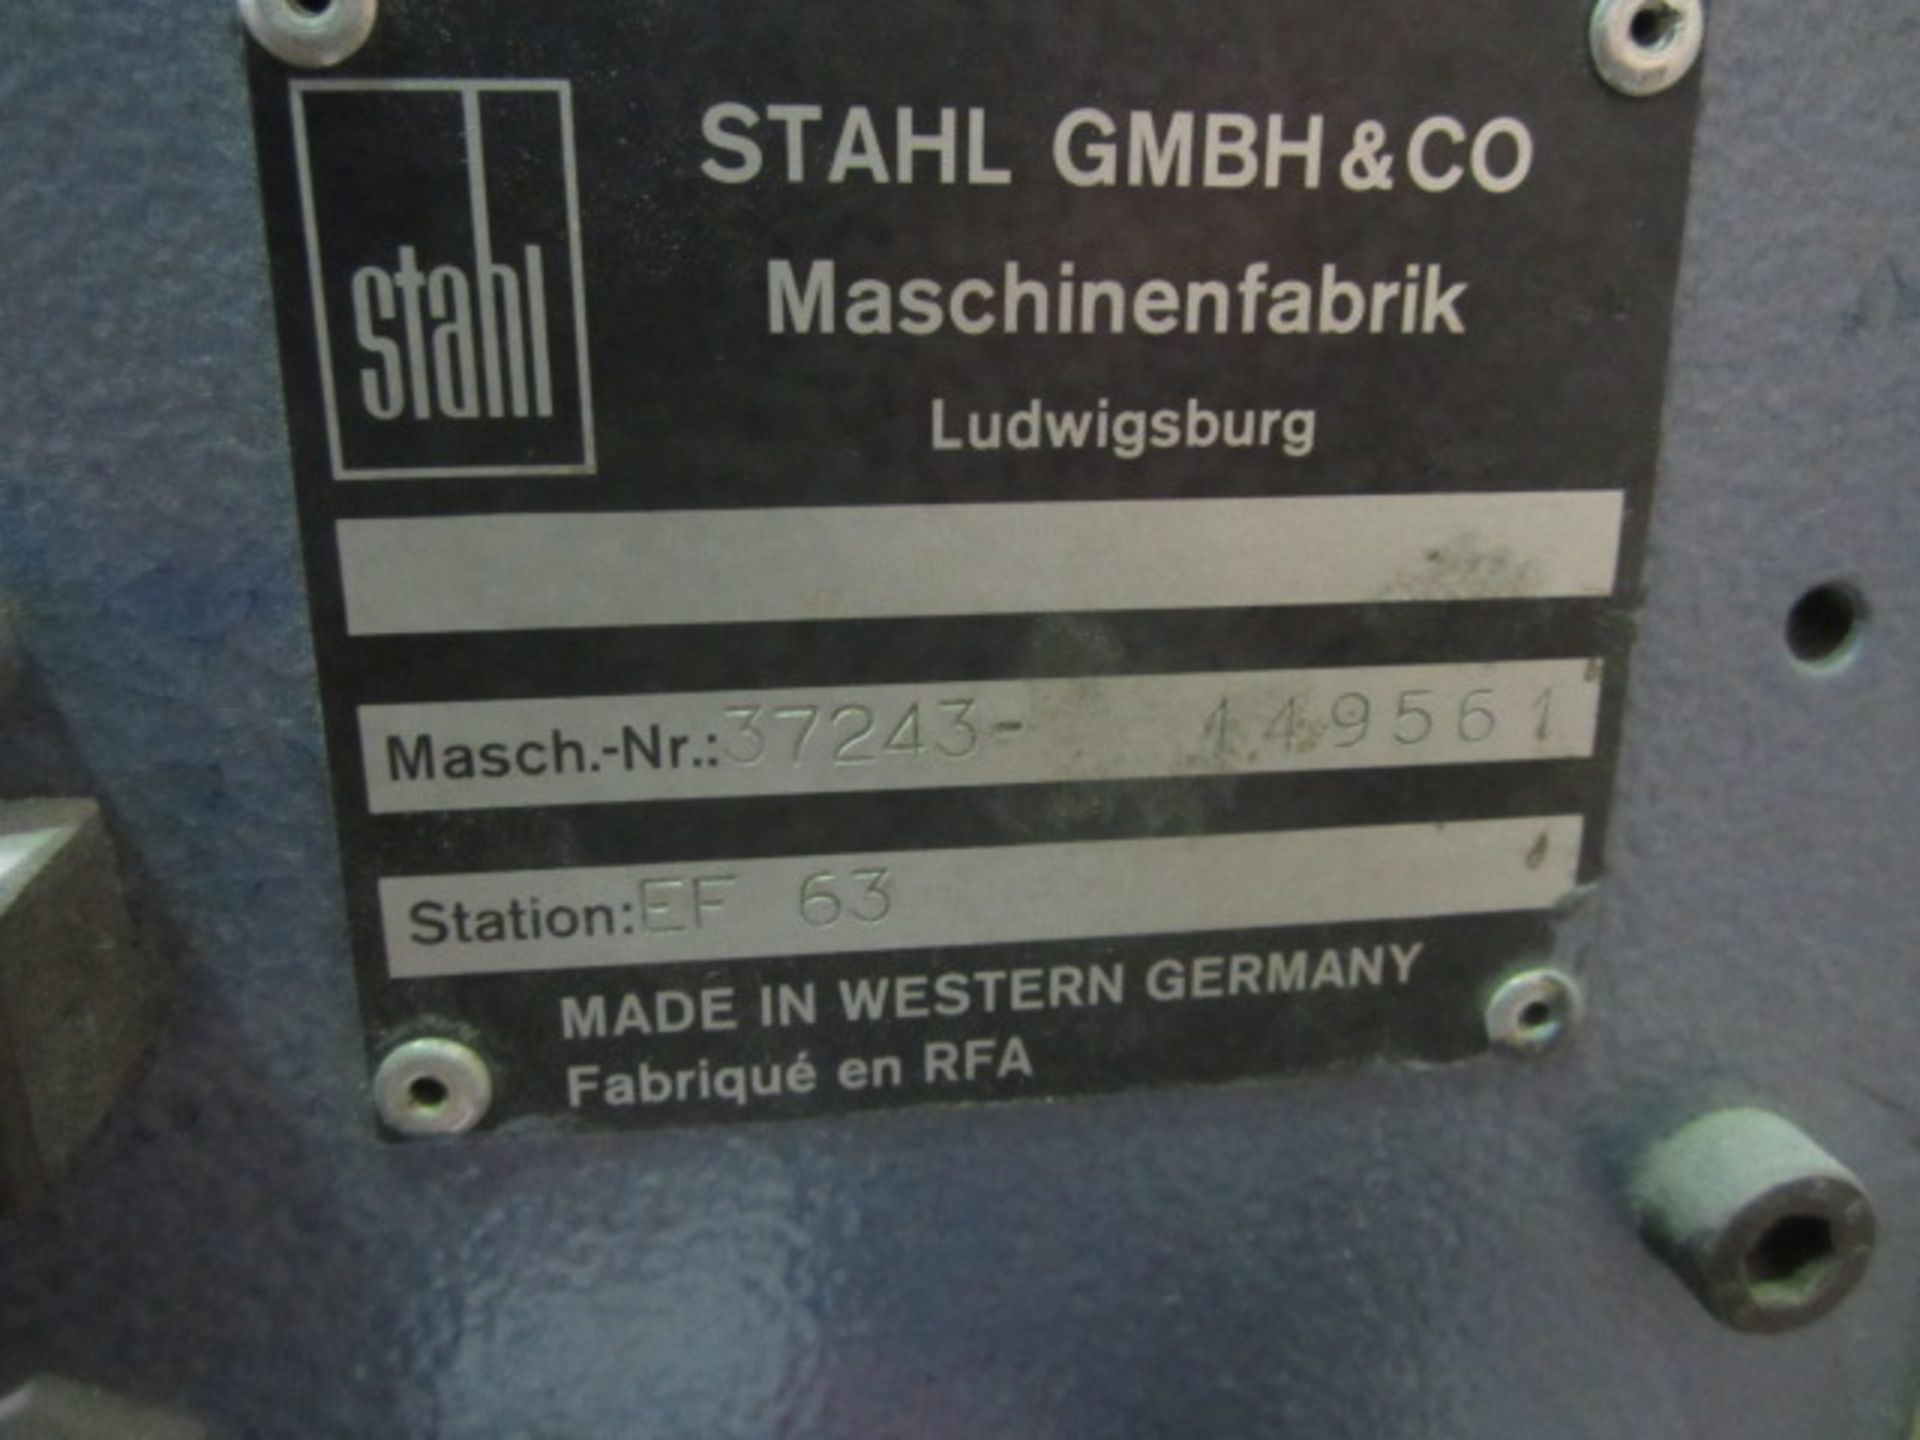 Stahl Folder, station EF63, serial no: 37243-149561 - Image 3 of 7